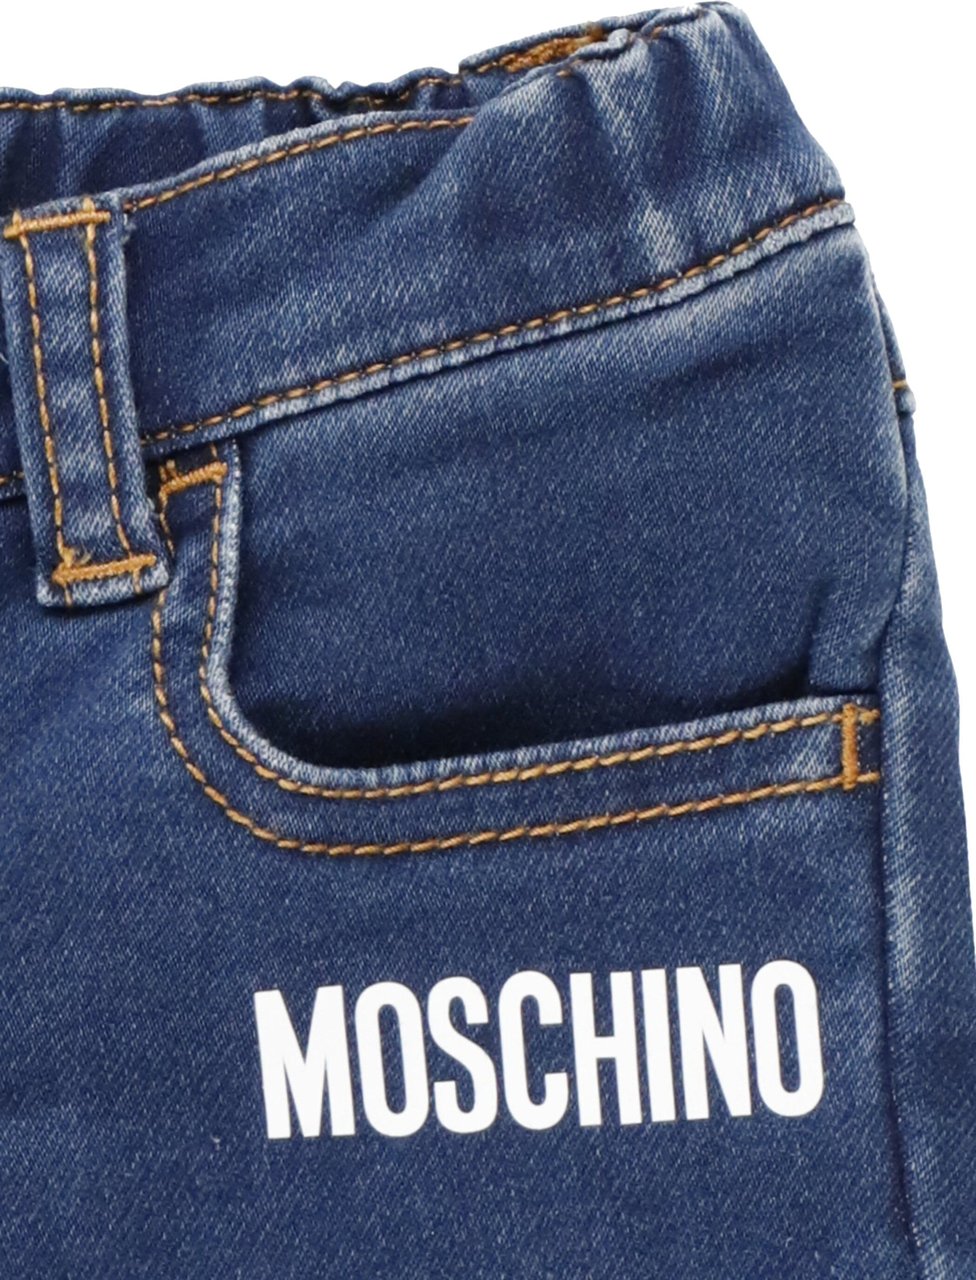 Moschino Trousers Dark Indigo Blauw